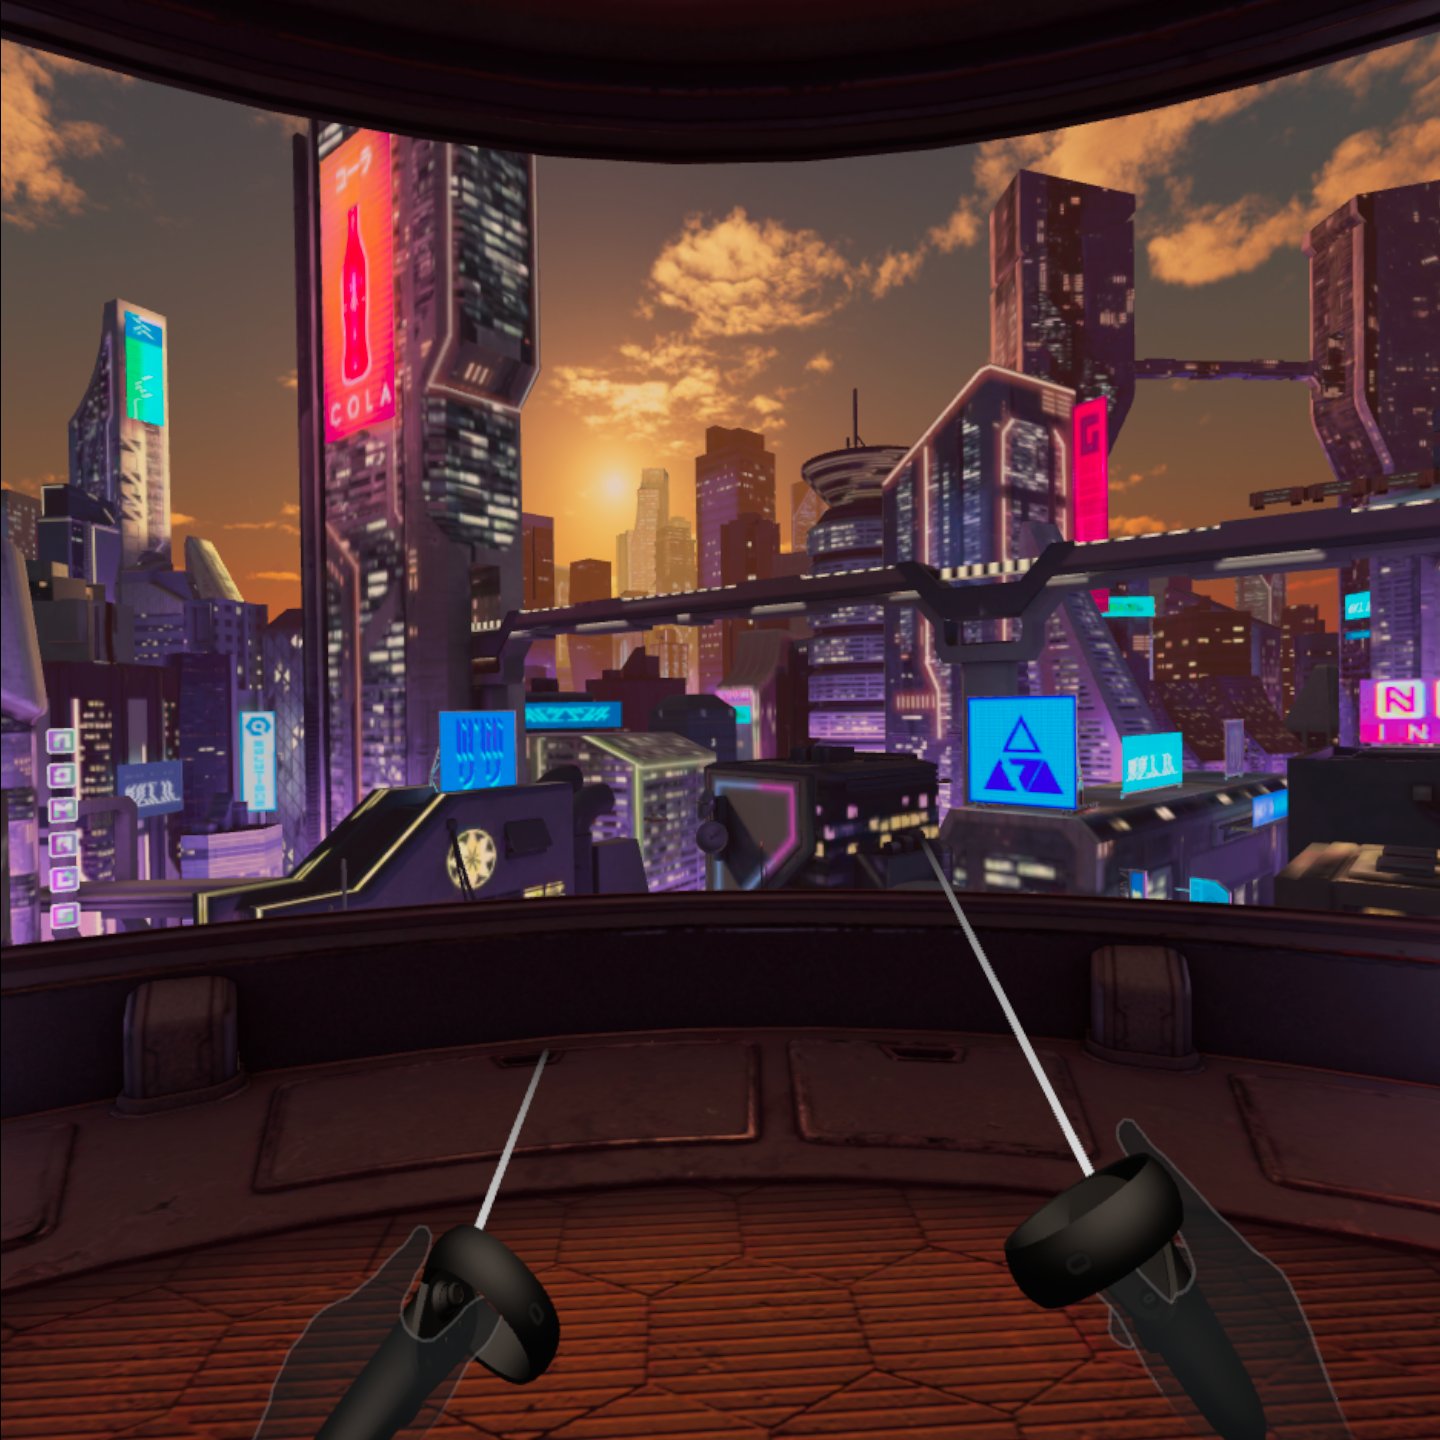 Oculus quest 2 экран. VR Oculus Quest 2. VR Oculus Quest 2 комната. Компьютерные игры и реальность. Индустрия компьютерных игр-2020.